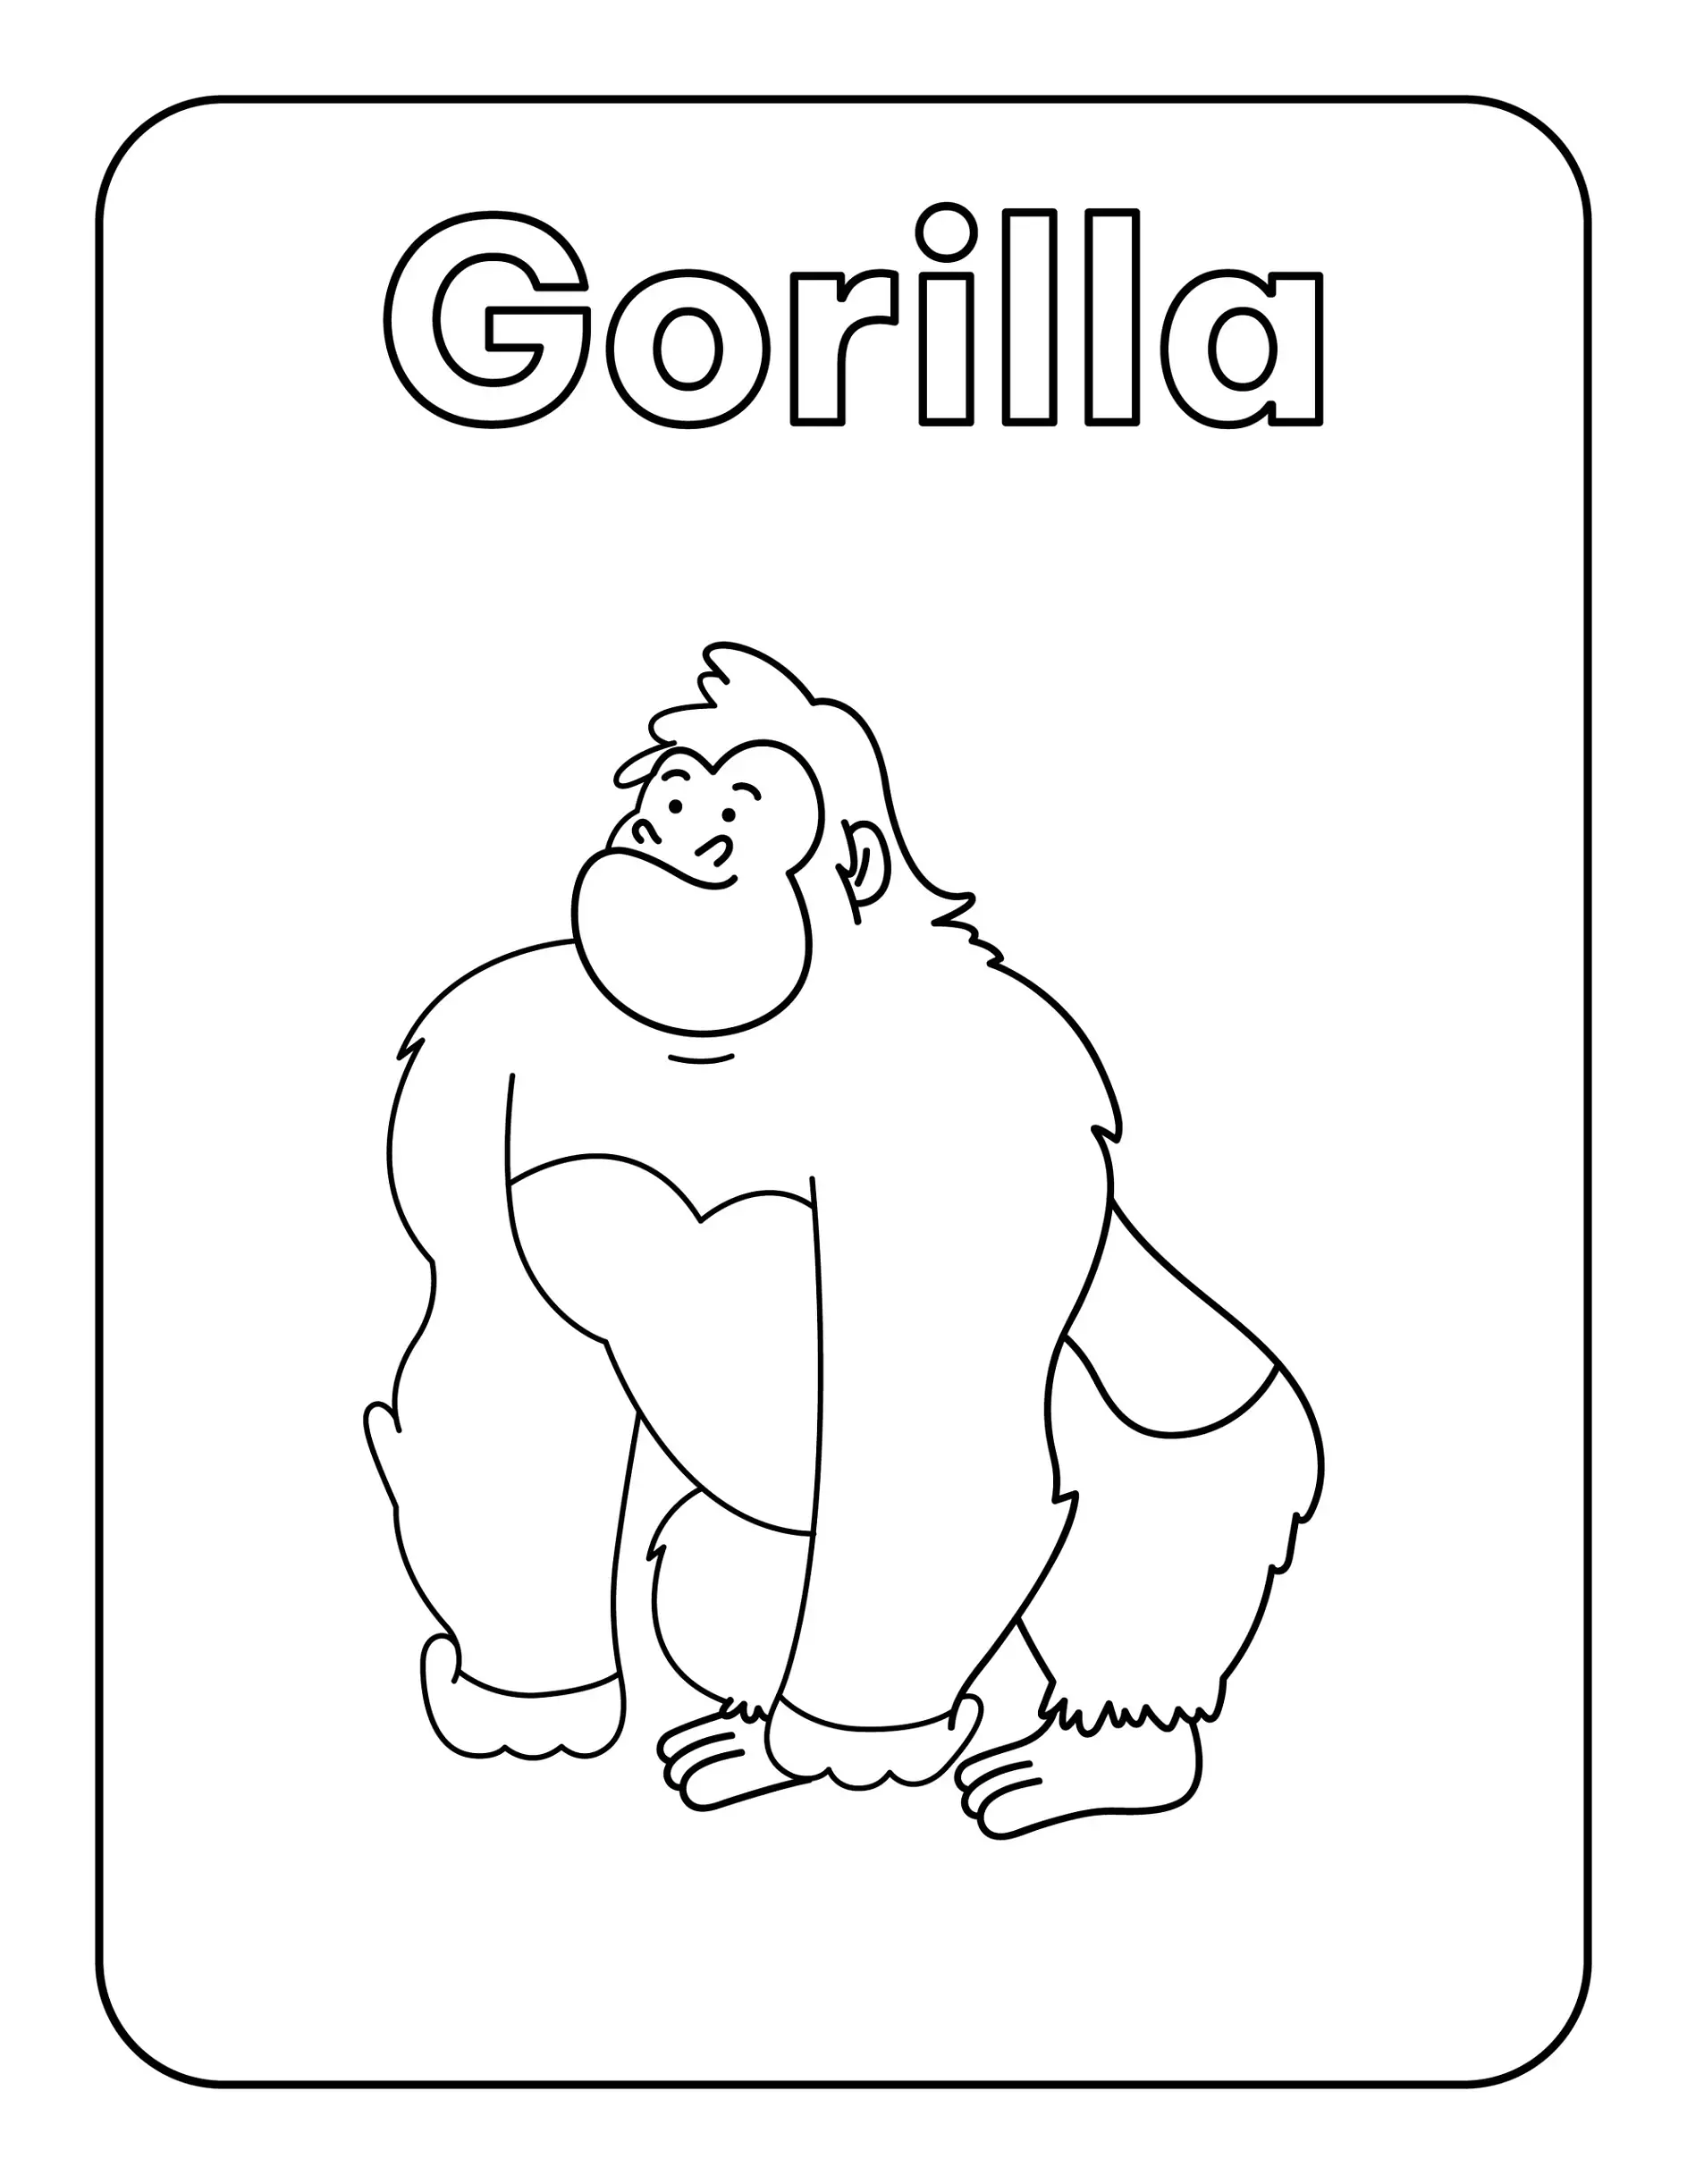 Ausmalbild Gorilla steht auf allen Vieren im Rahmen mit Titel